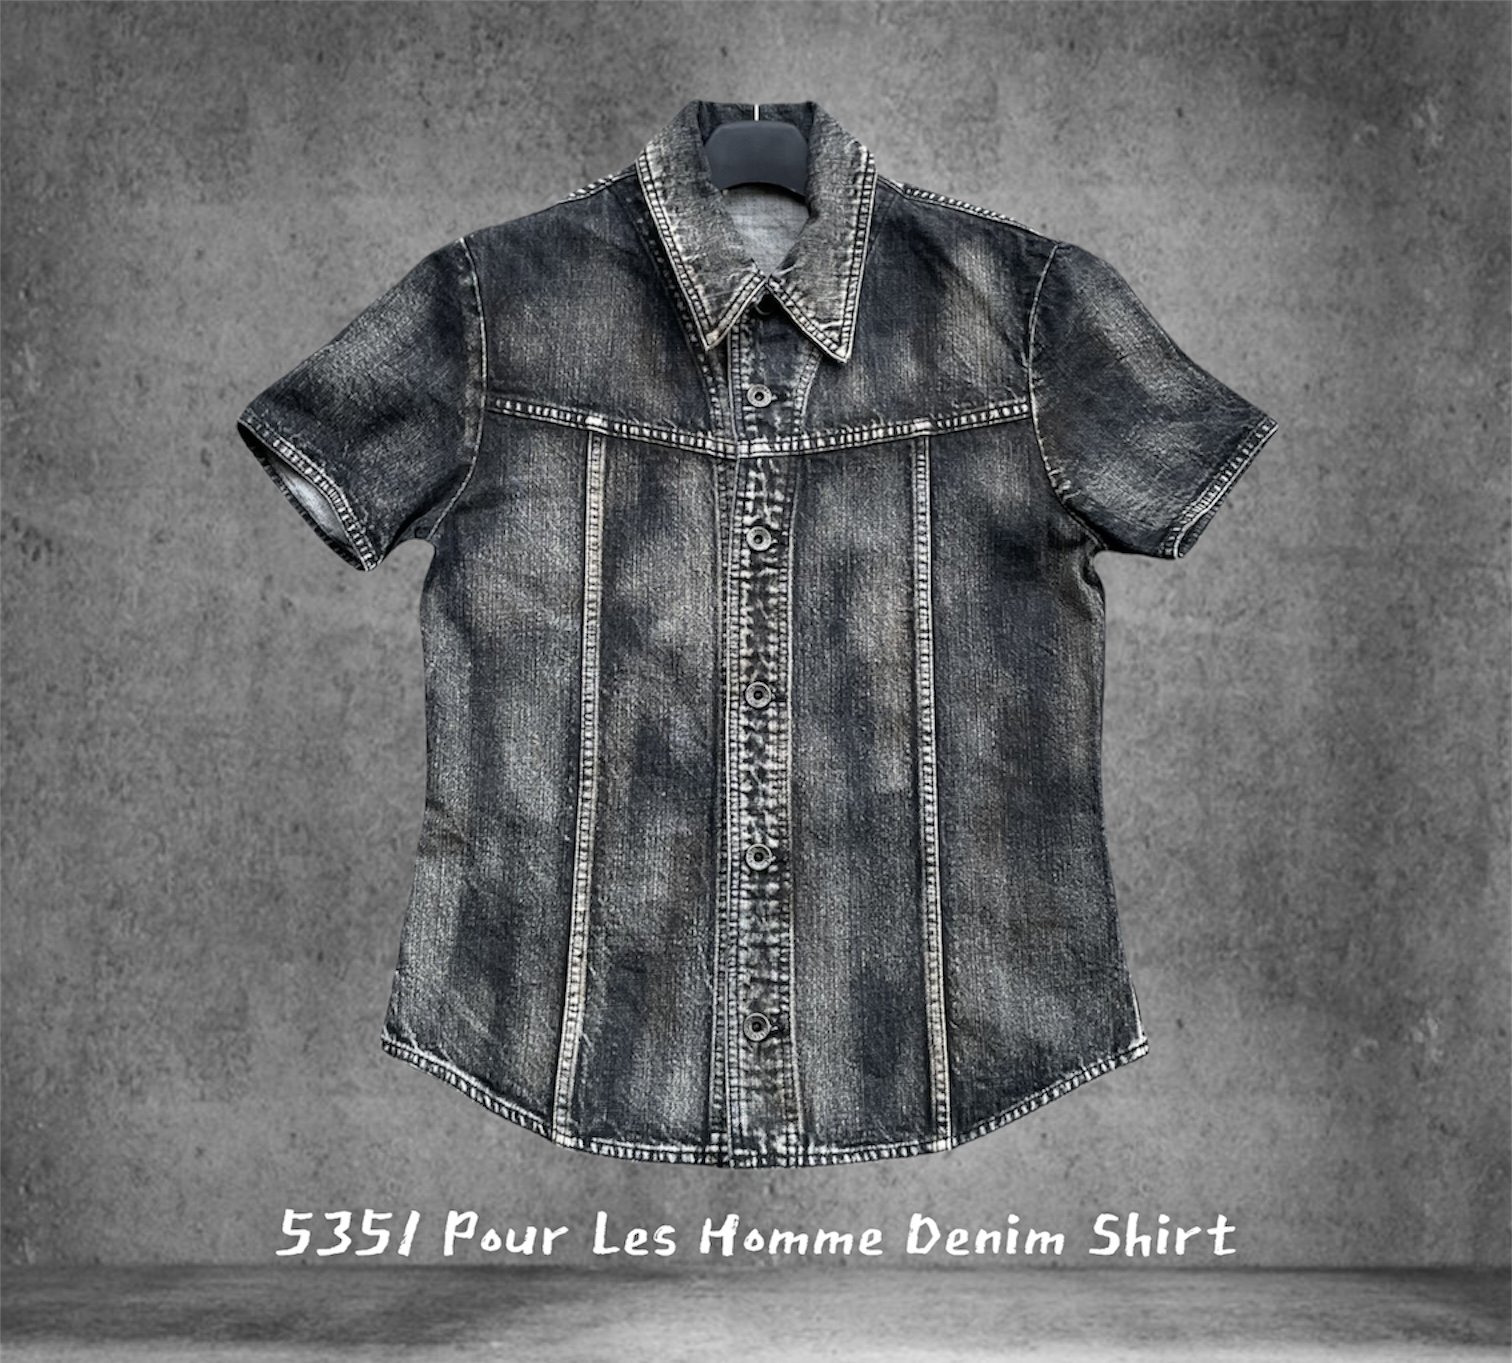 5351 Pour Les Hommes Denim Shirt